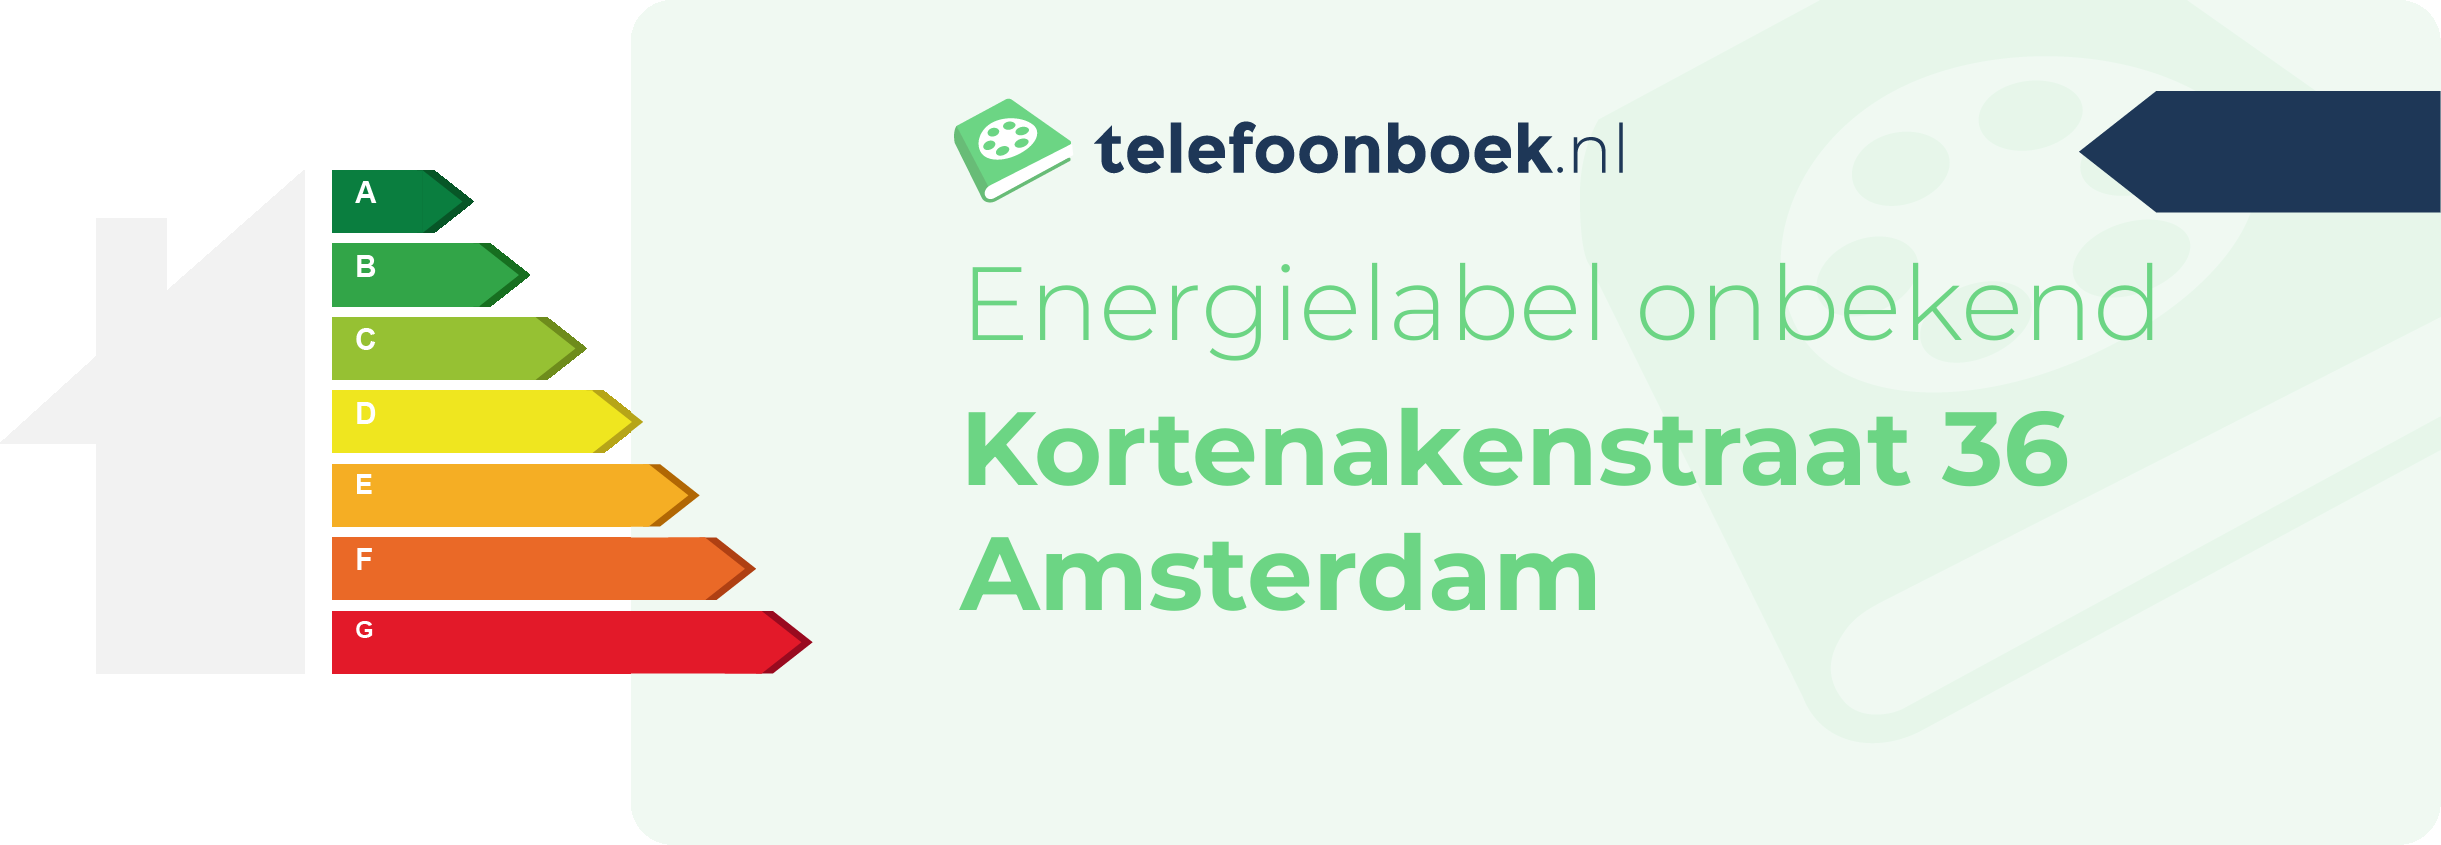 Energielabel Kortenakenstraat 36 Amsterdam